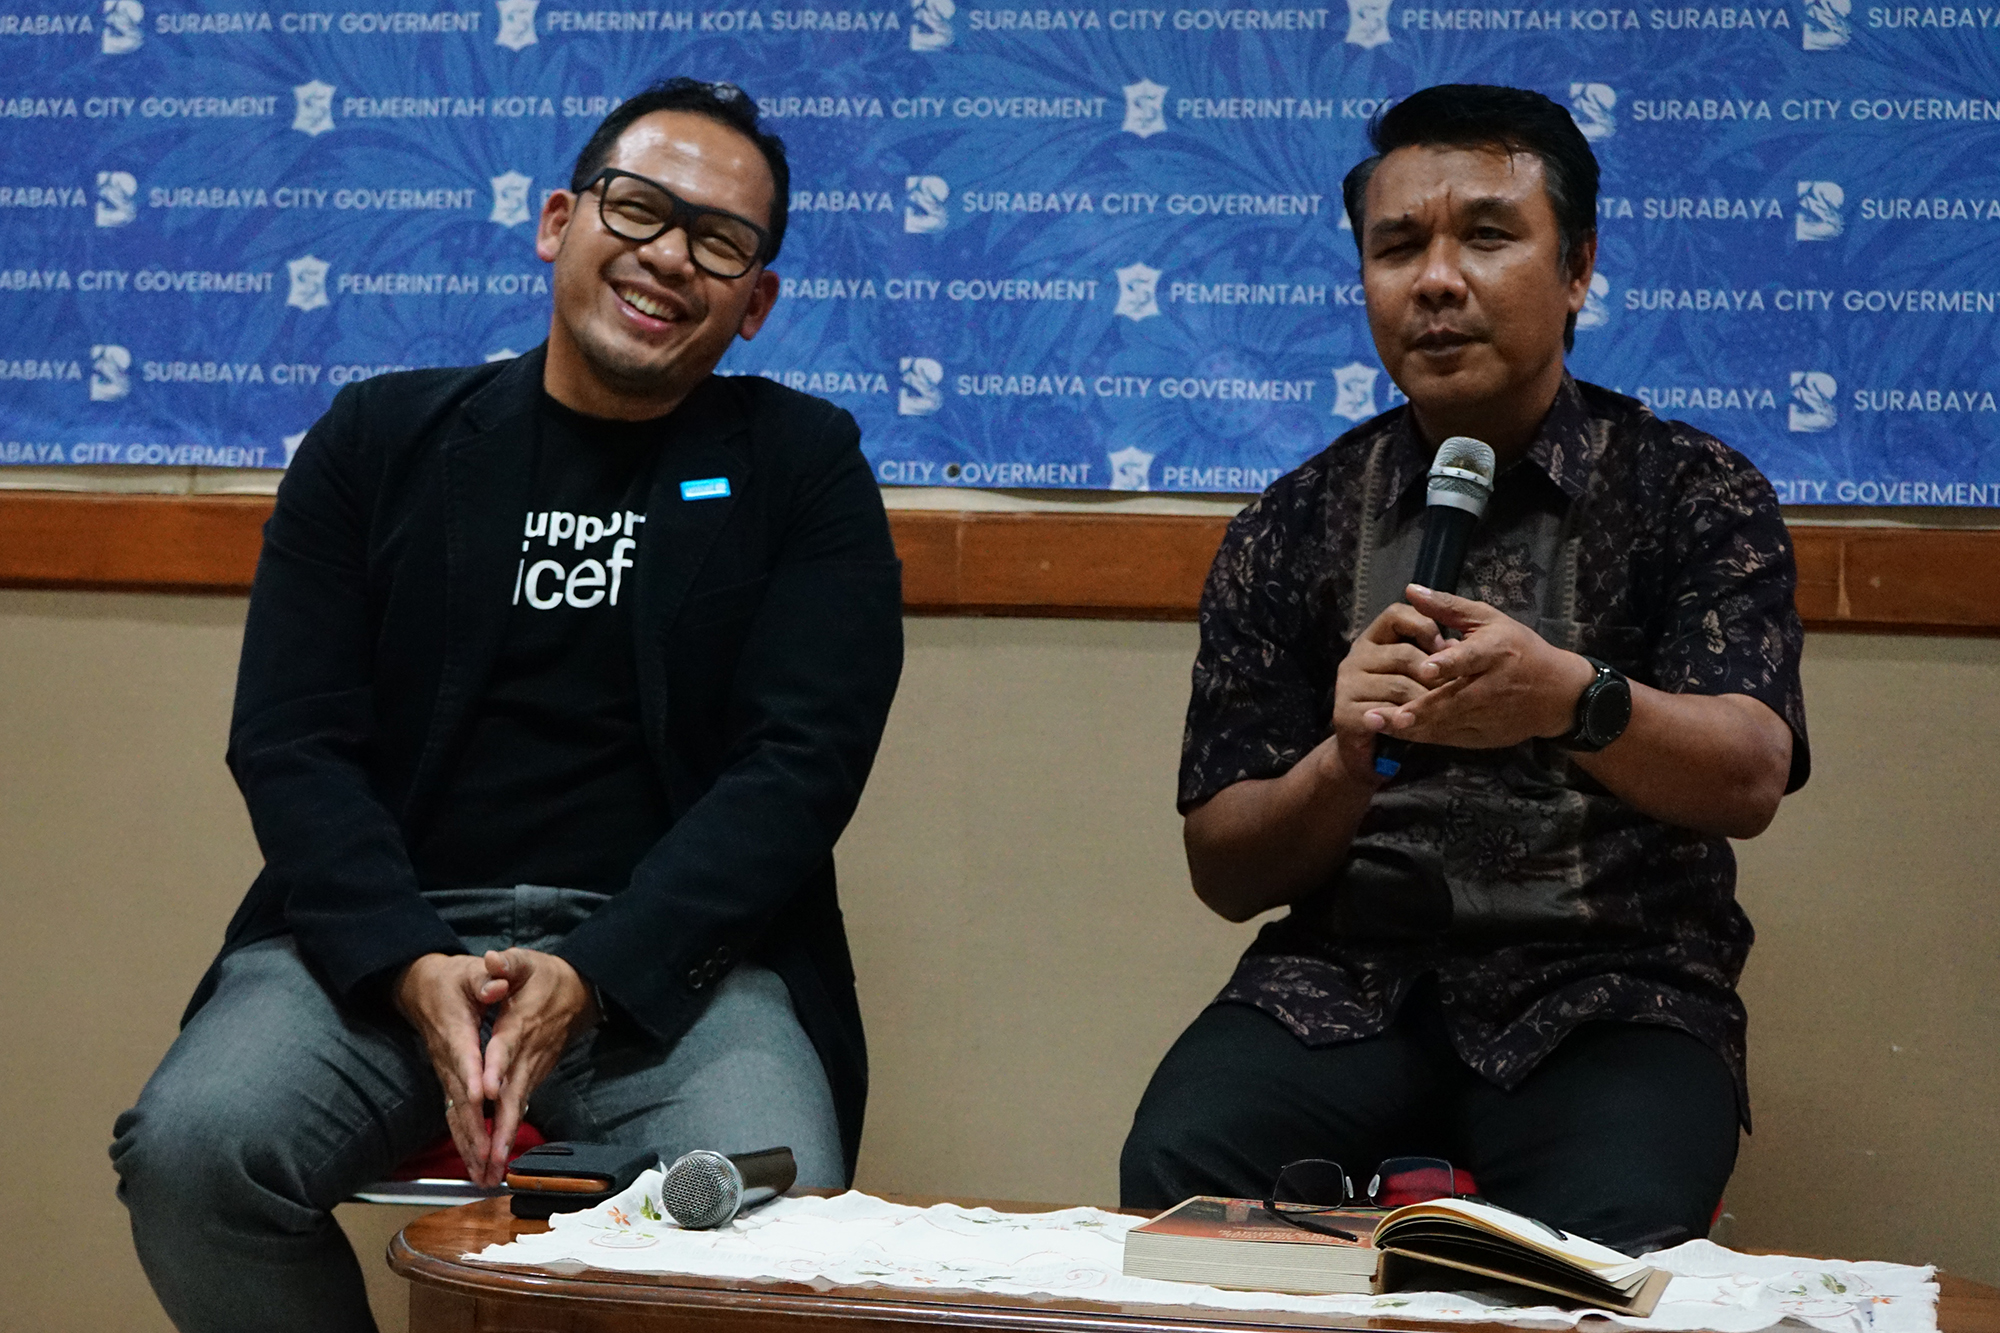 Surabaya Wakili Indonesia Ikut KTT Kota Layak Anak Tingkat Internasional di Jerman